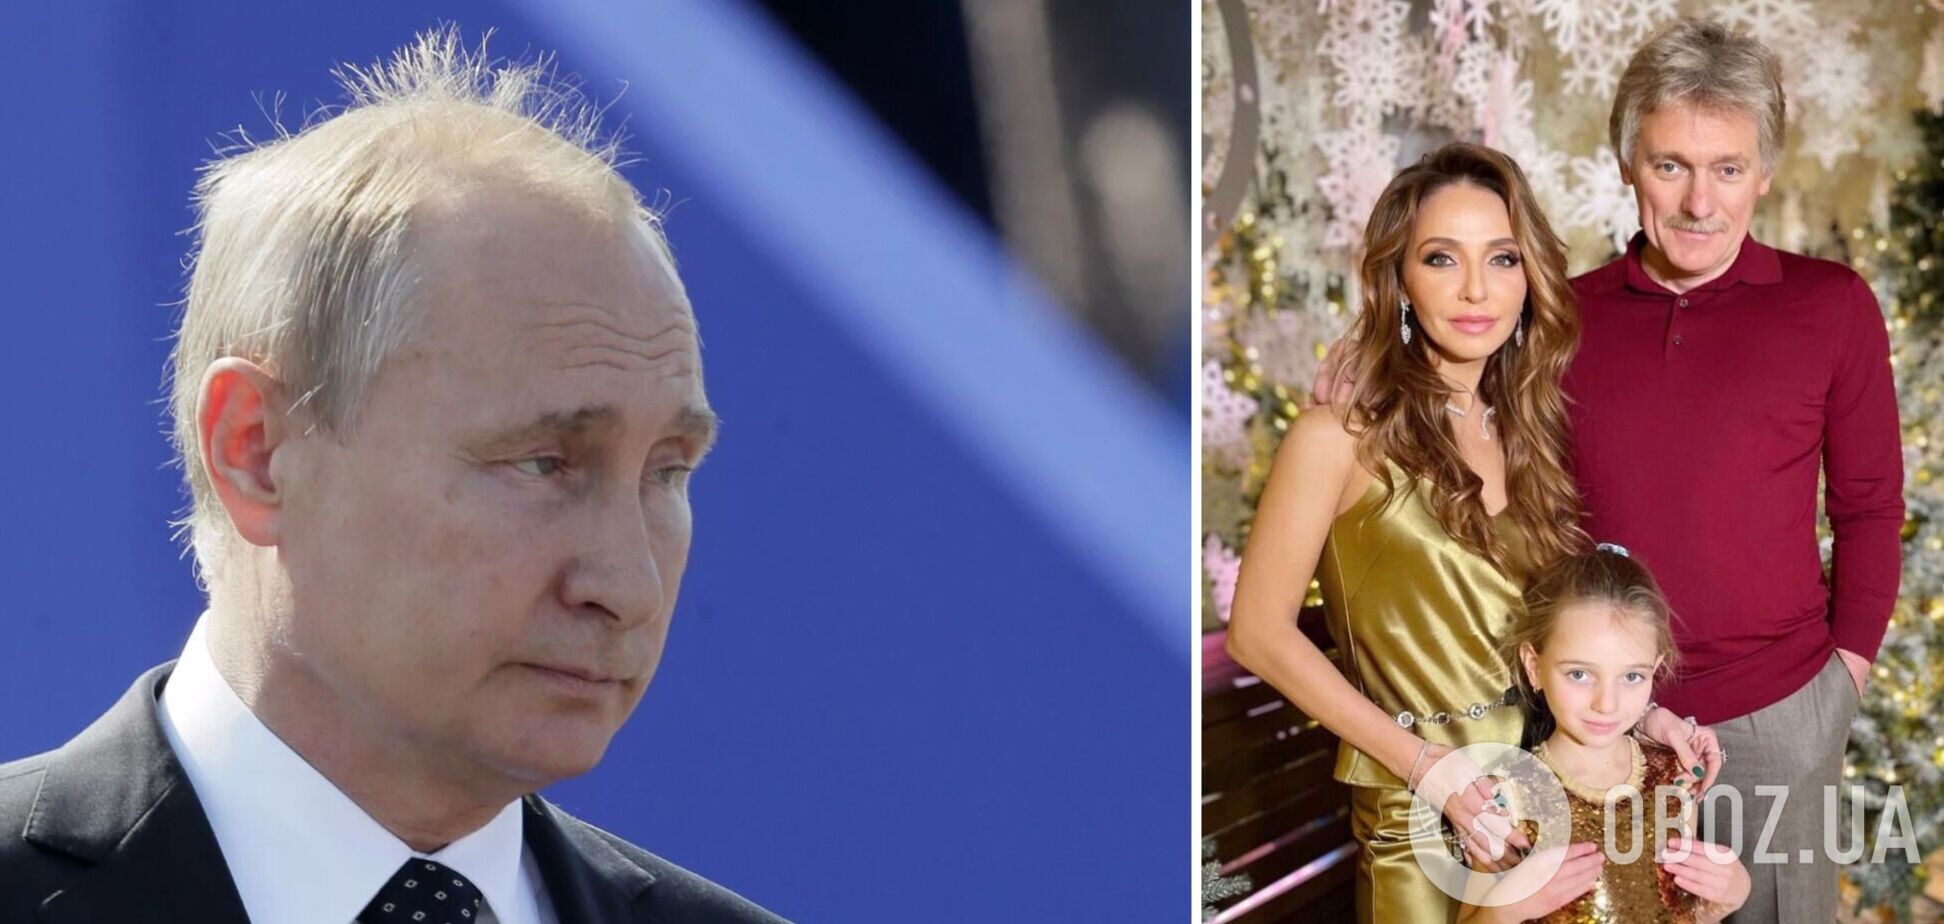 'Оккупационный флаг России'. Жена Пескова высказалась про Путина и была высмеяна в сети